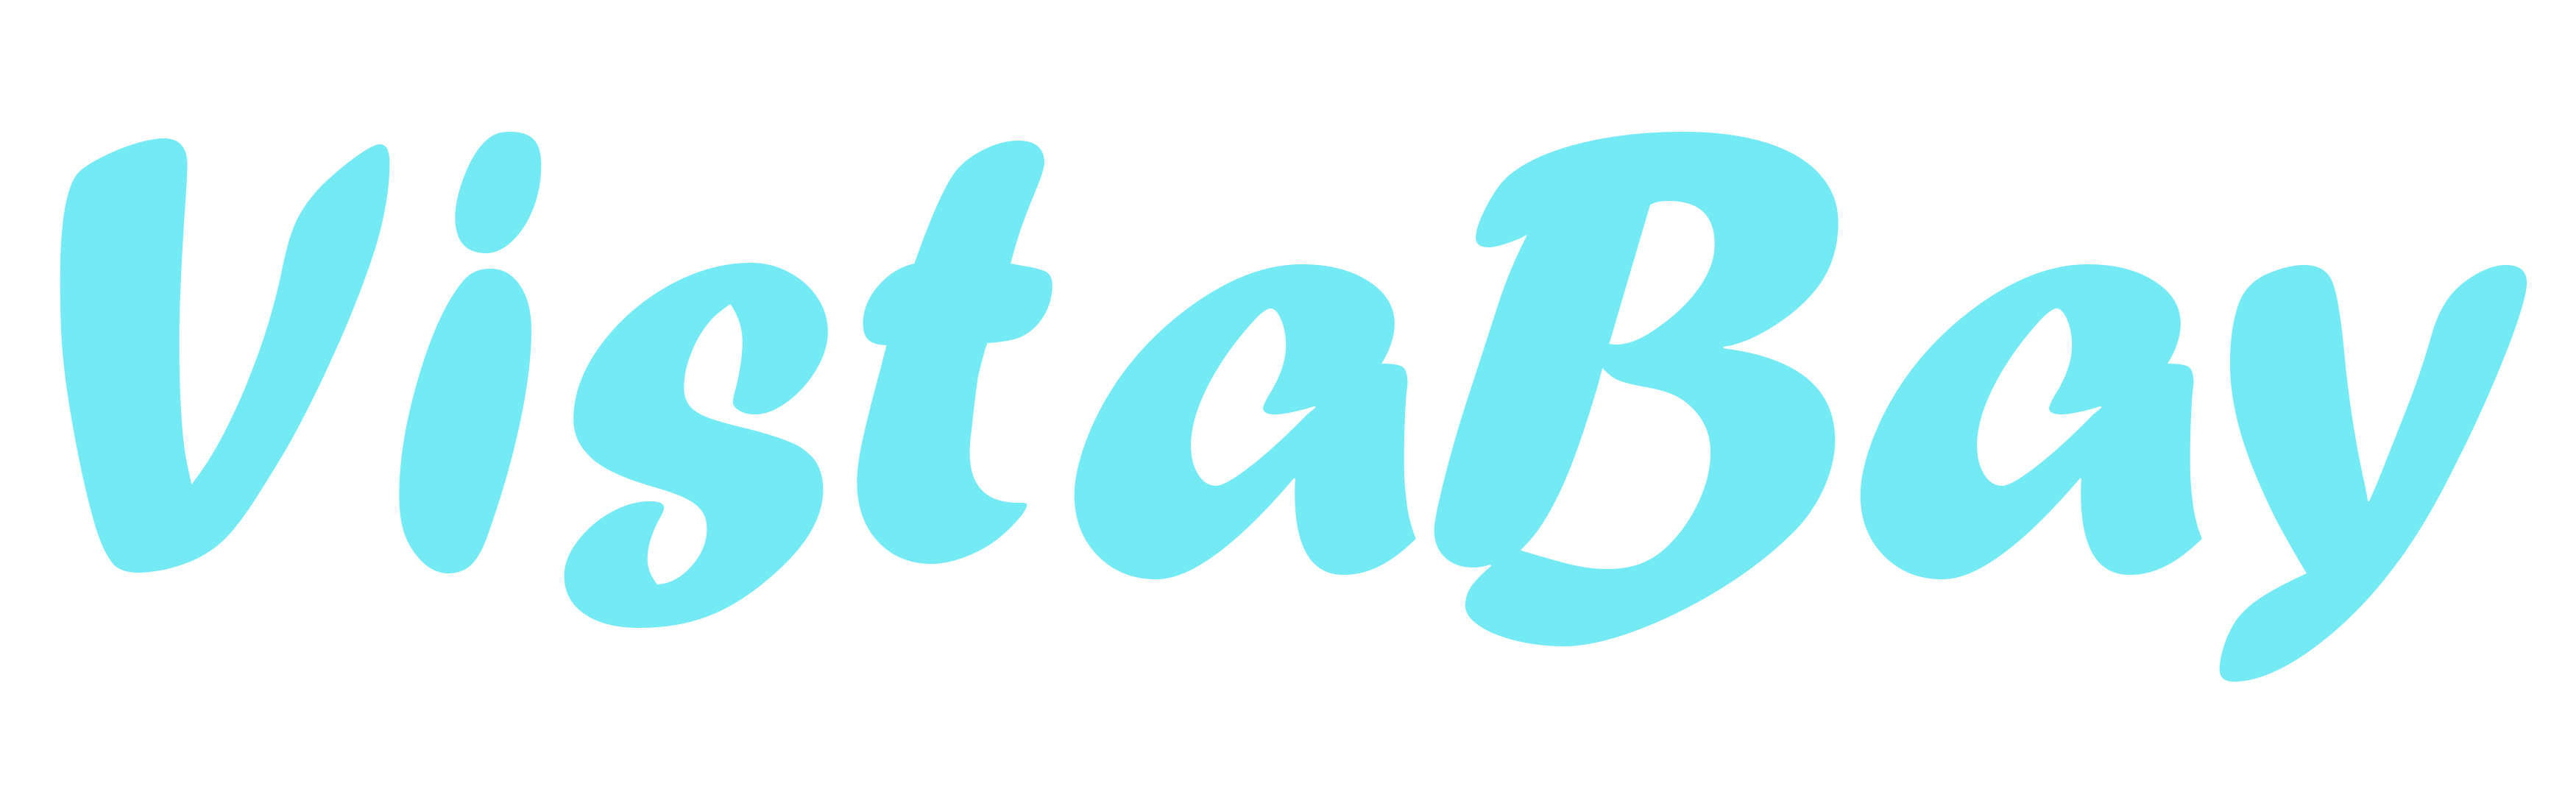 VistaBay logo